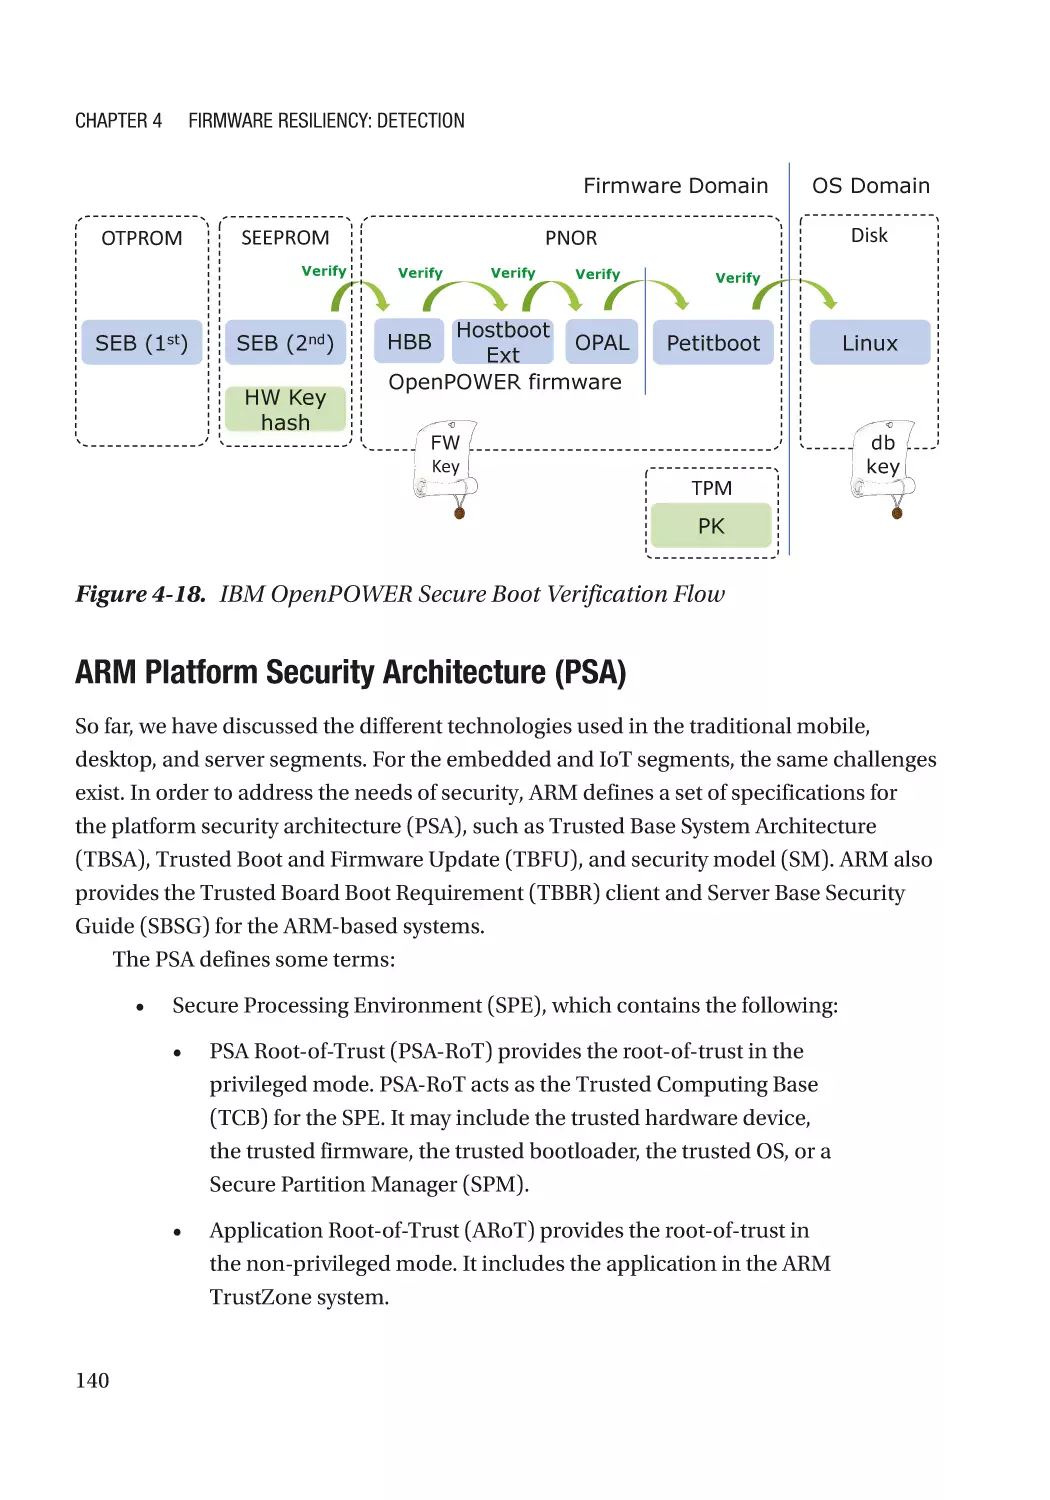 ARM Platform Security Architecture (PSA)